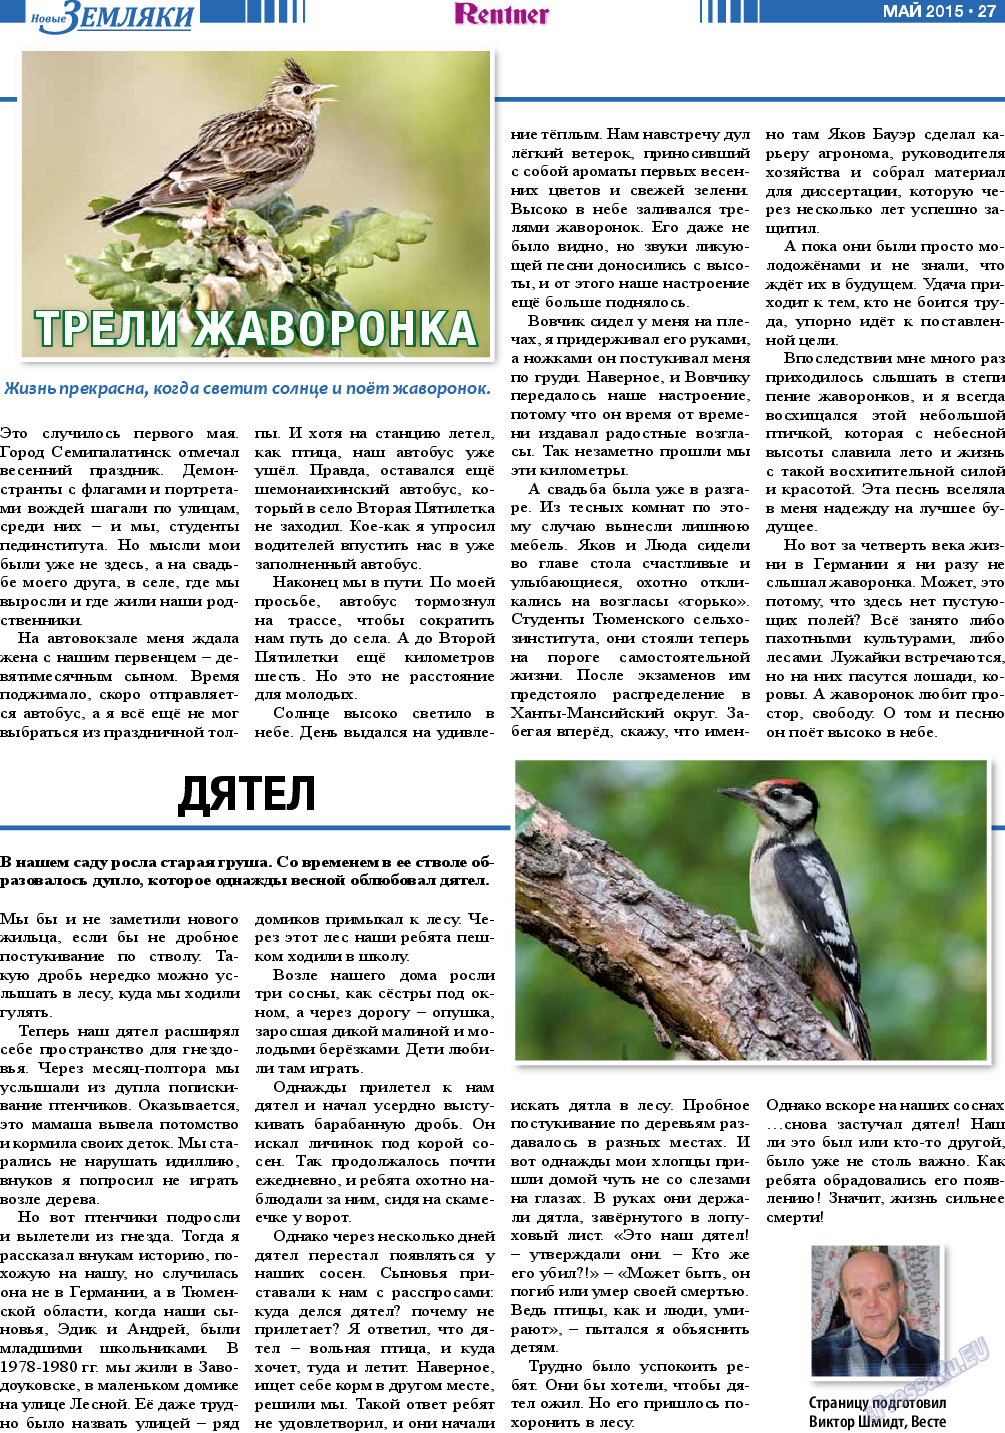 Новые Земляки, газета. 2015 №5 стр.27